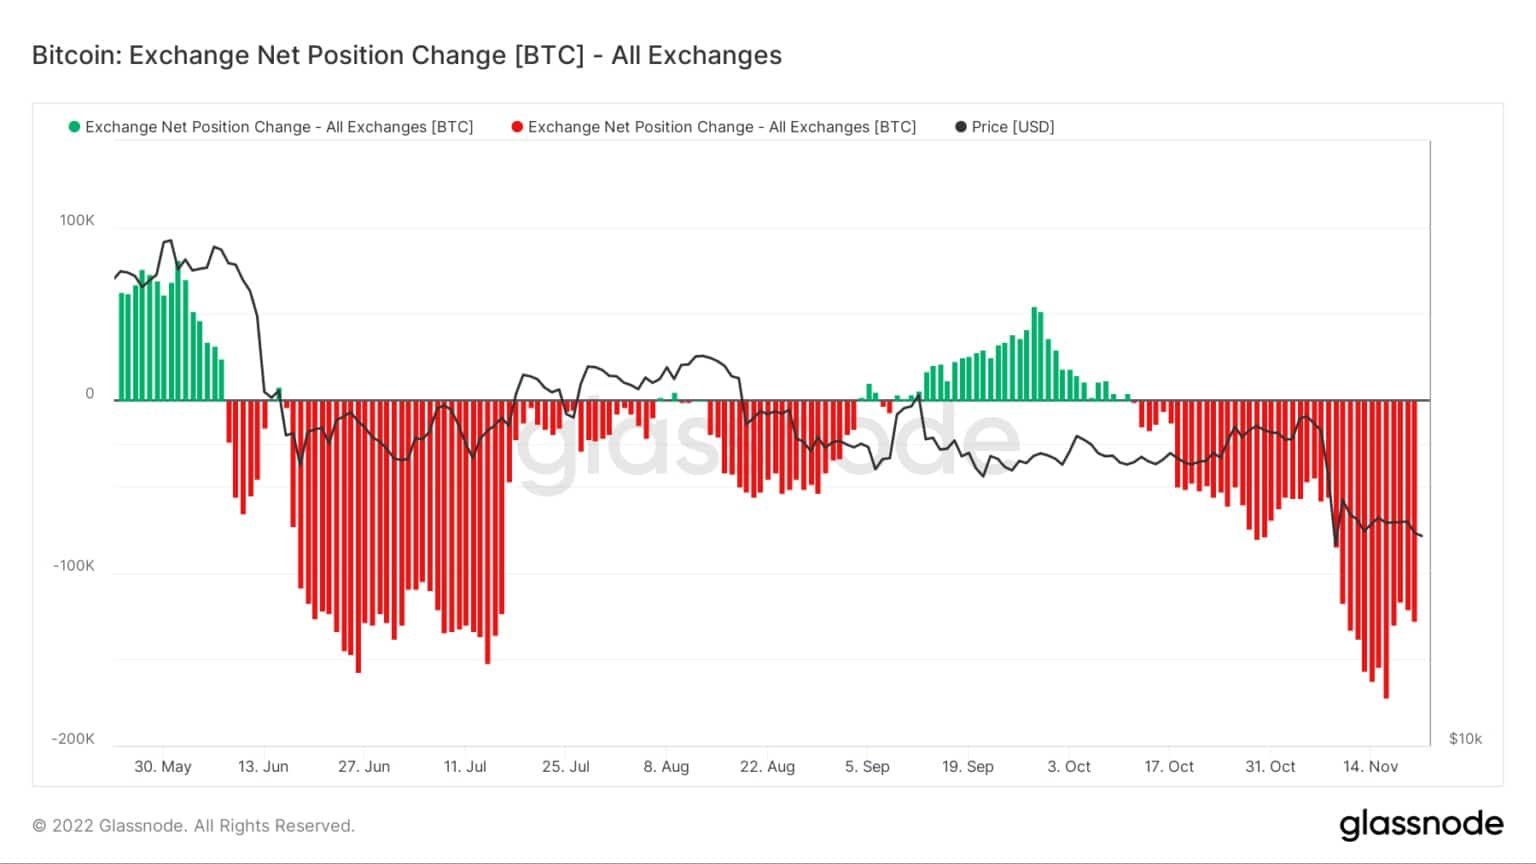 Bitcoin: Cambio de posición neta en los intercambios - Todos los intercambios (Fuente: Glassnode)